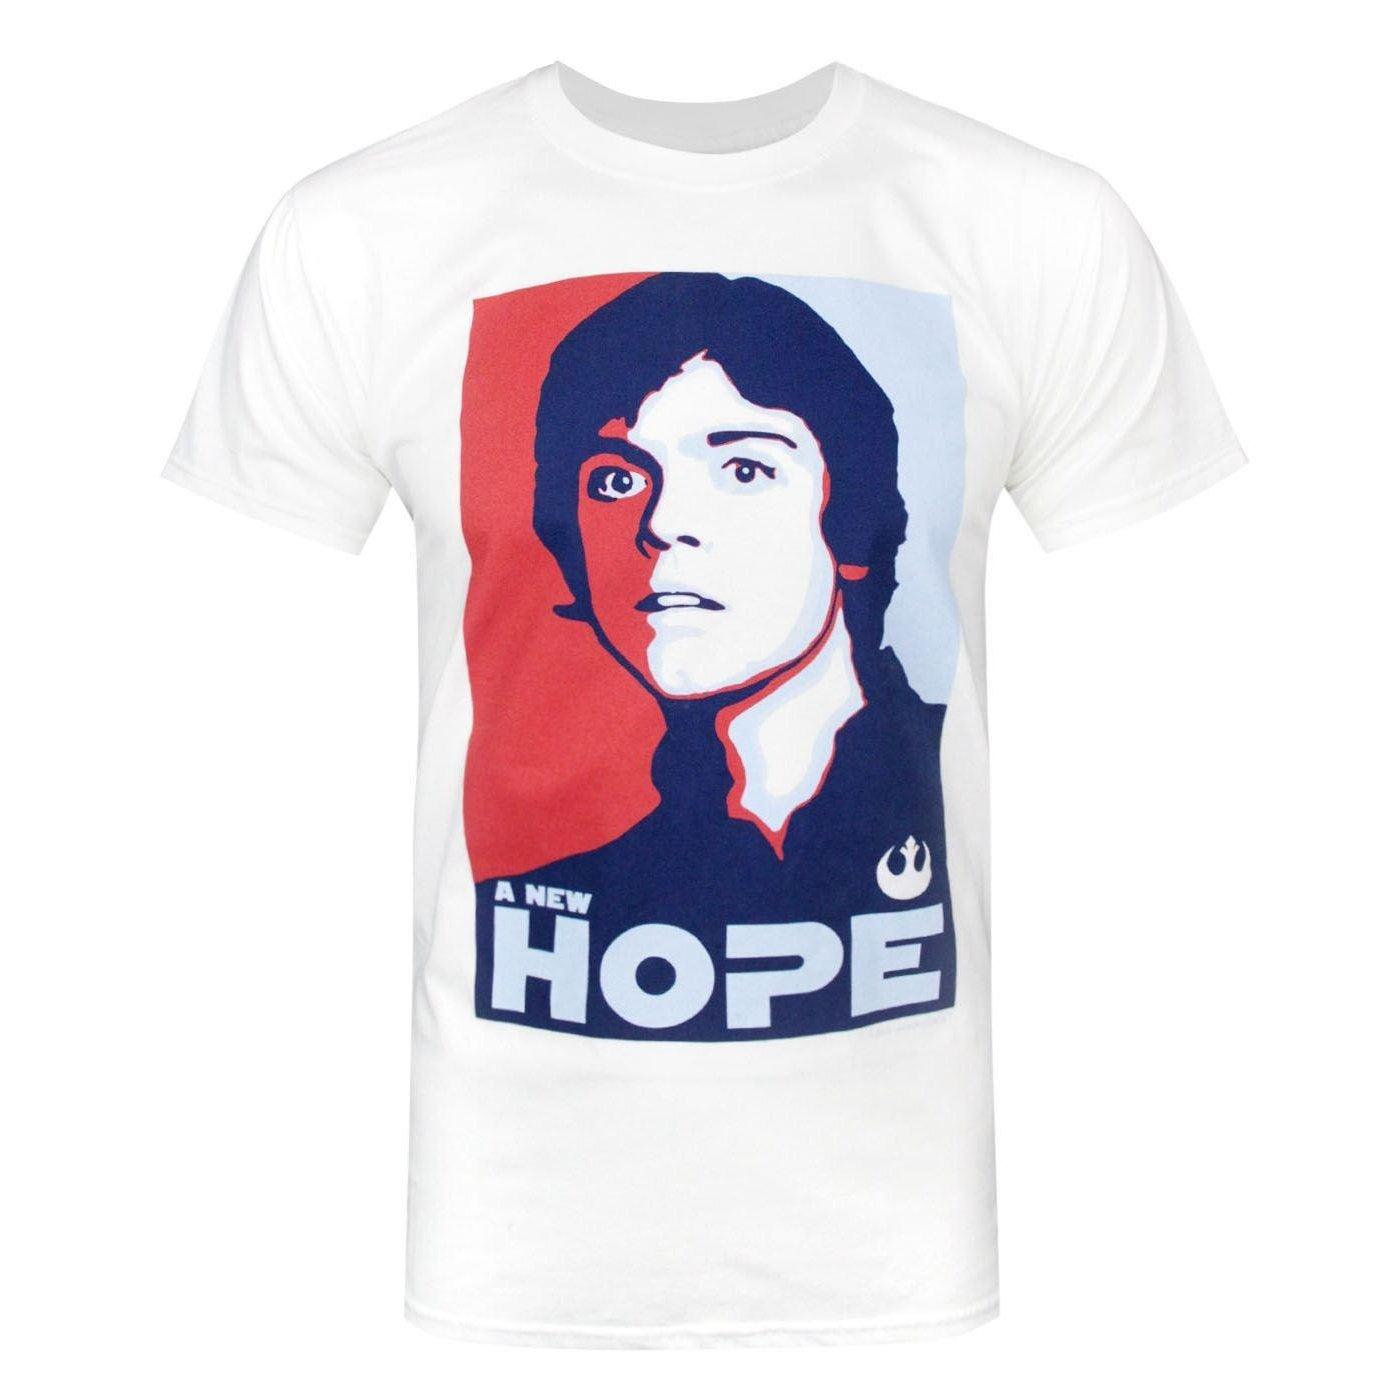 Offizielles Luke Skywalker A New Hope Tshirt Herren Weiss M von STAR WARS